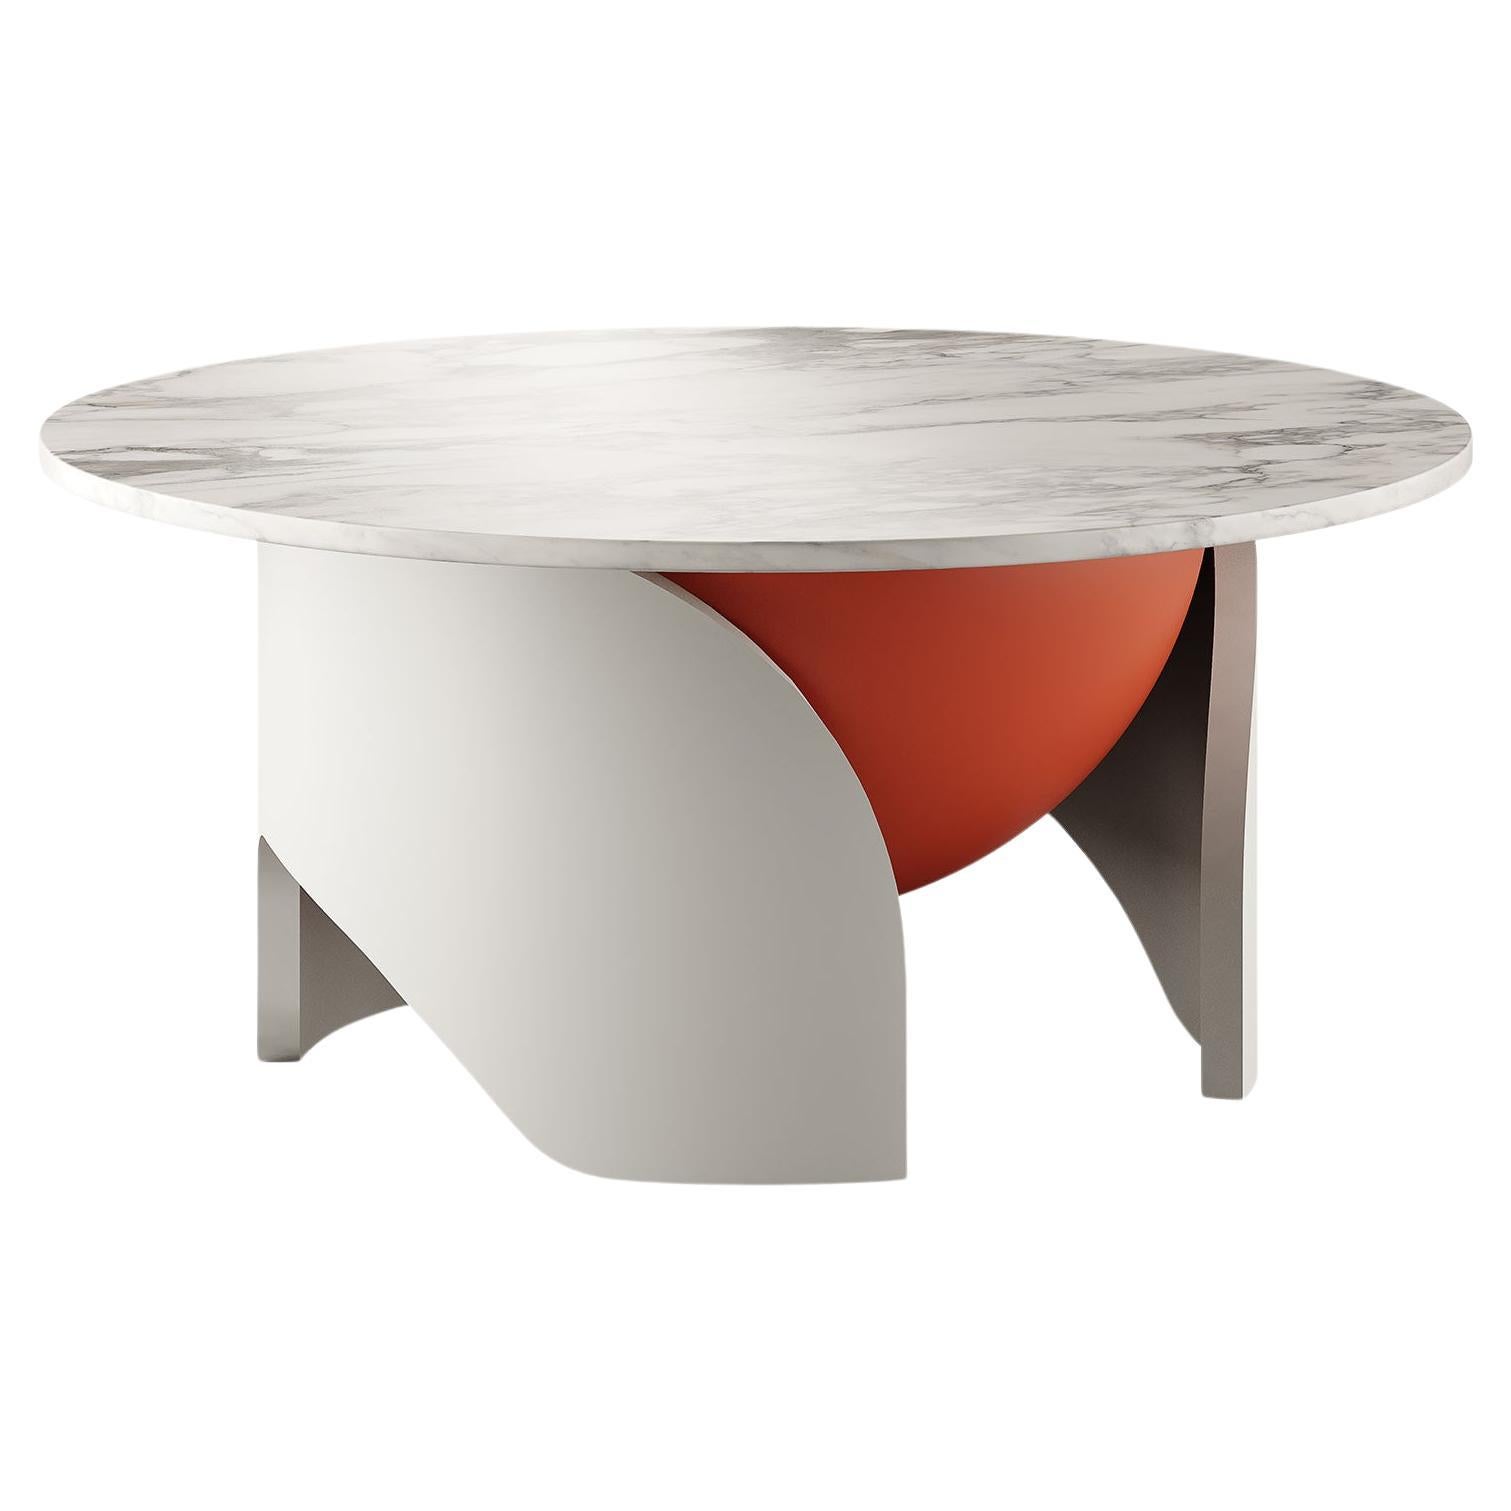 Table centrale ronde moderne Calacatta plateau en marbre blanc laqué gris et orange mat en vente